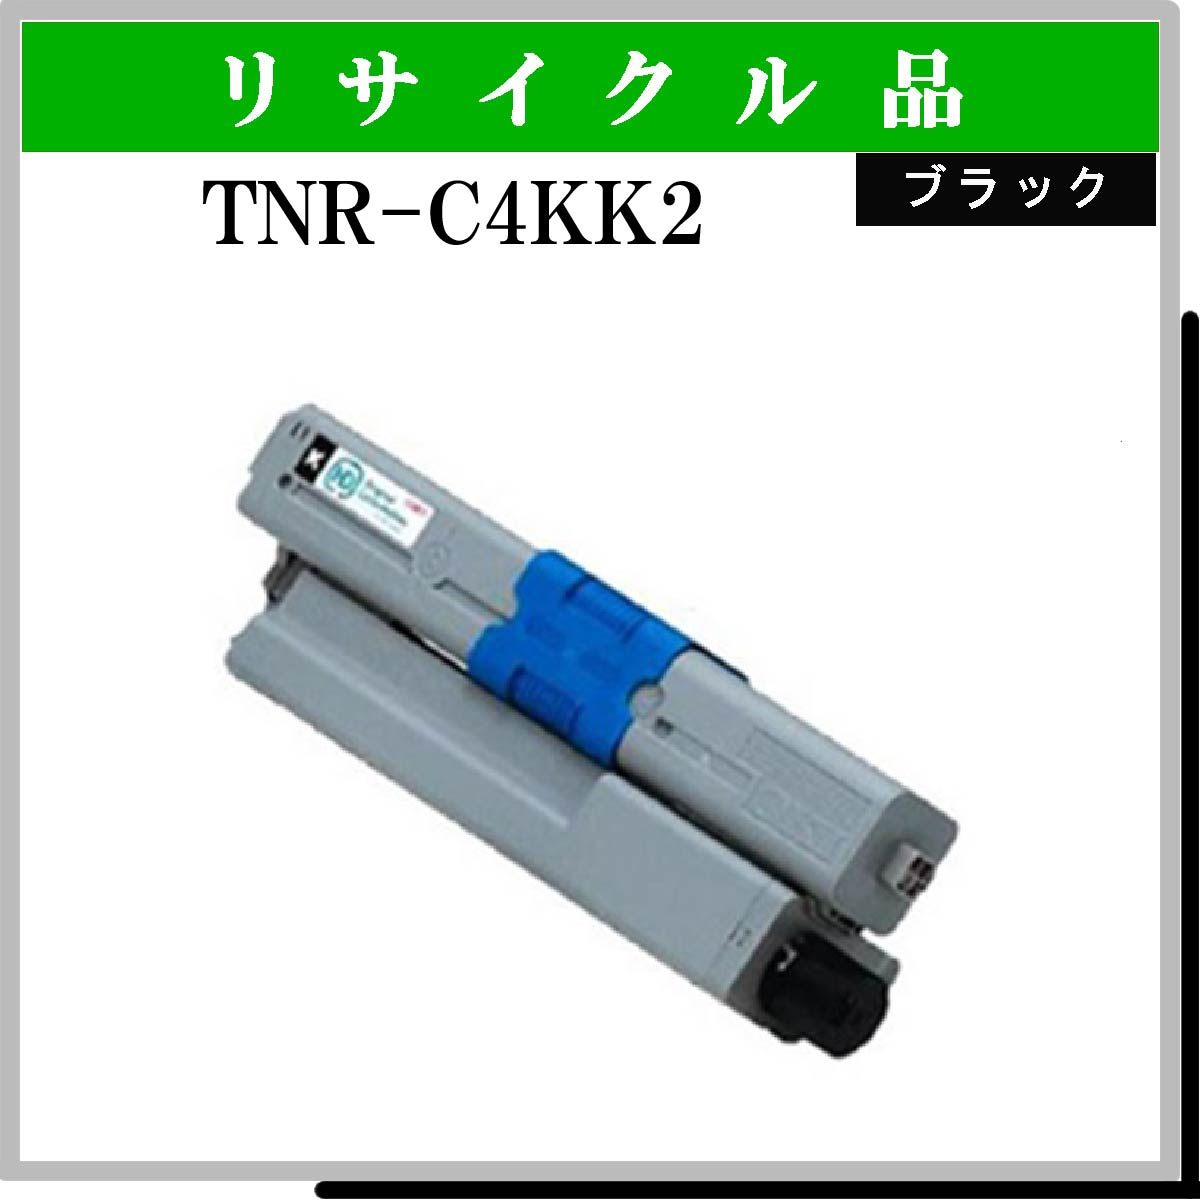 TNR-C4KK2